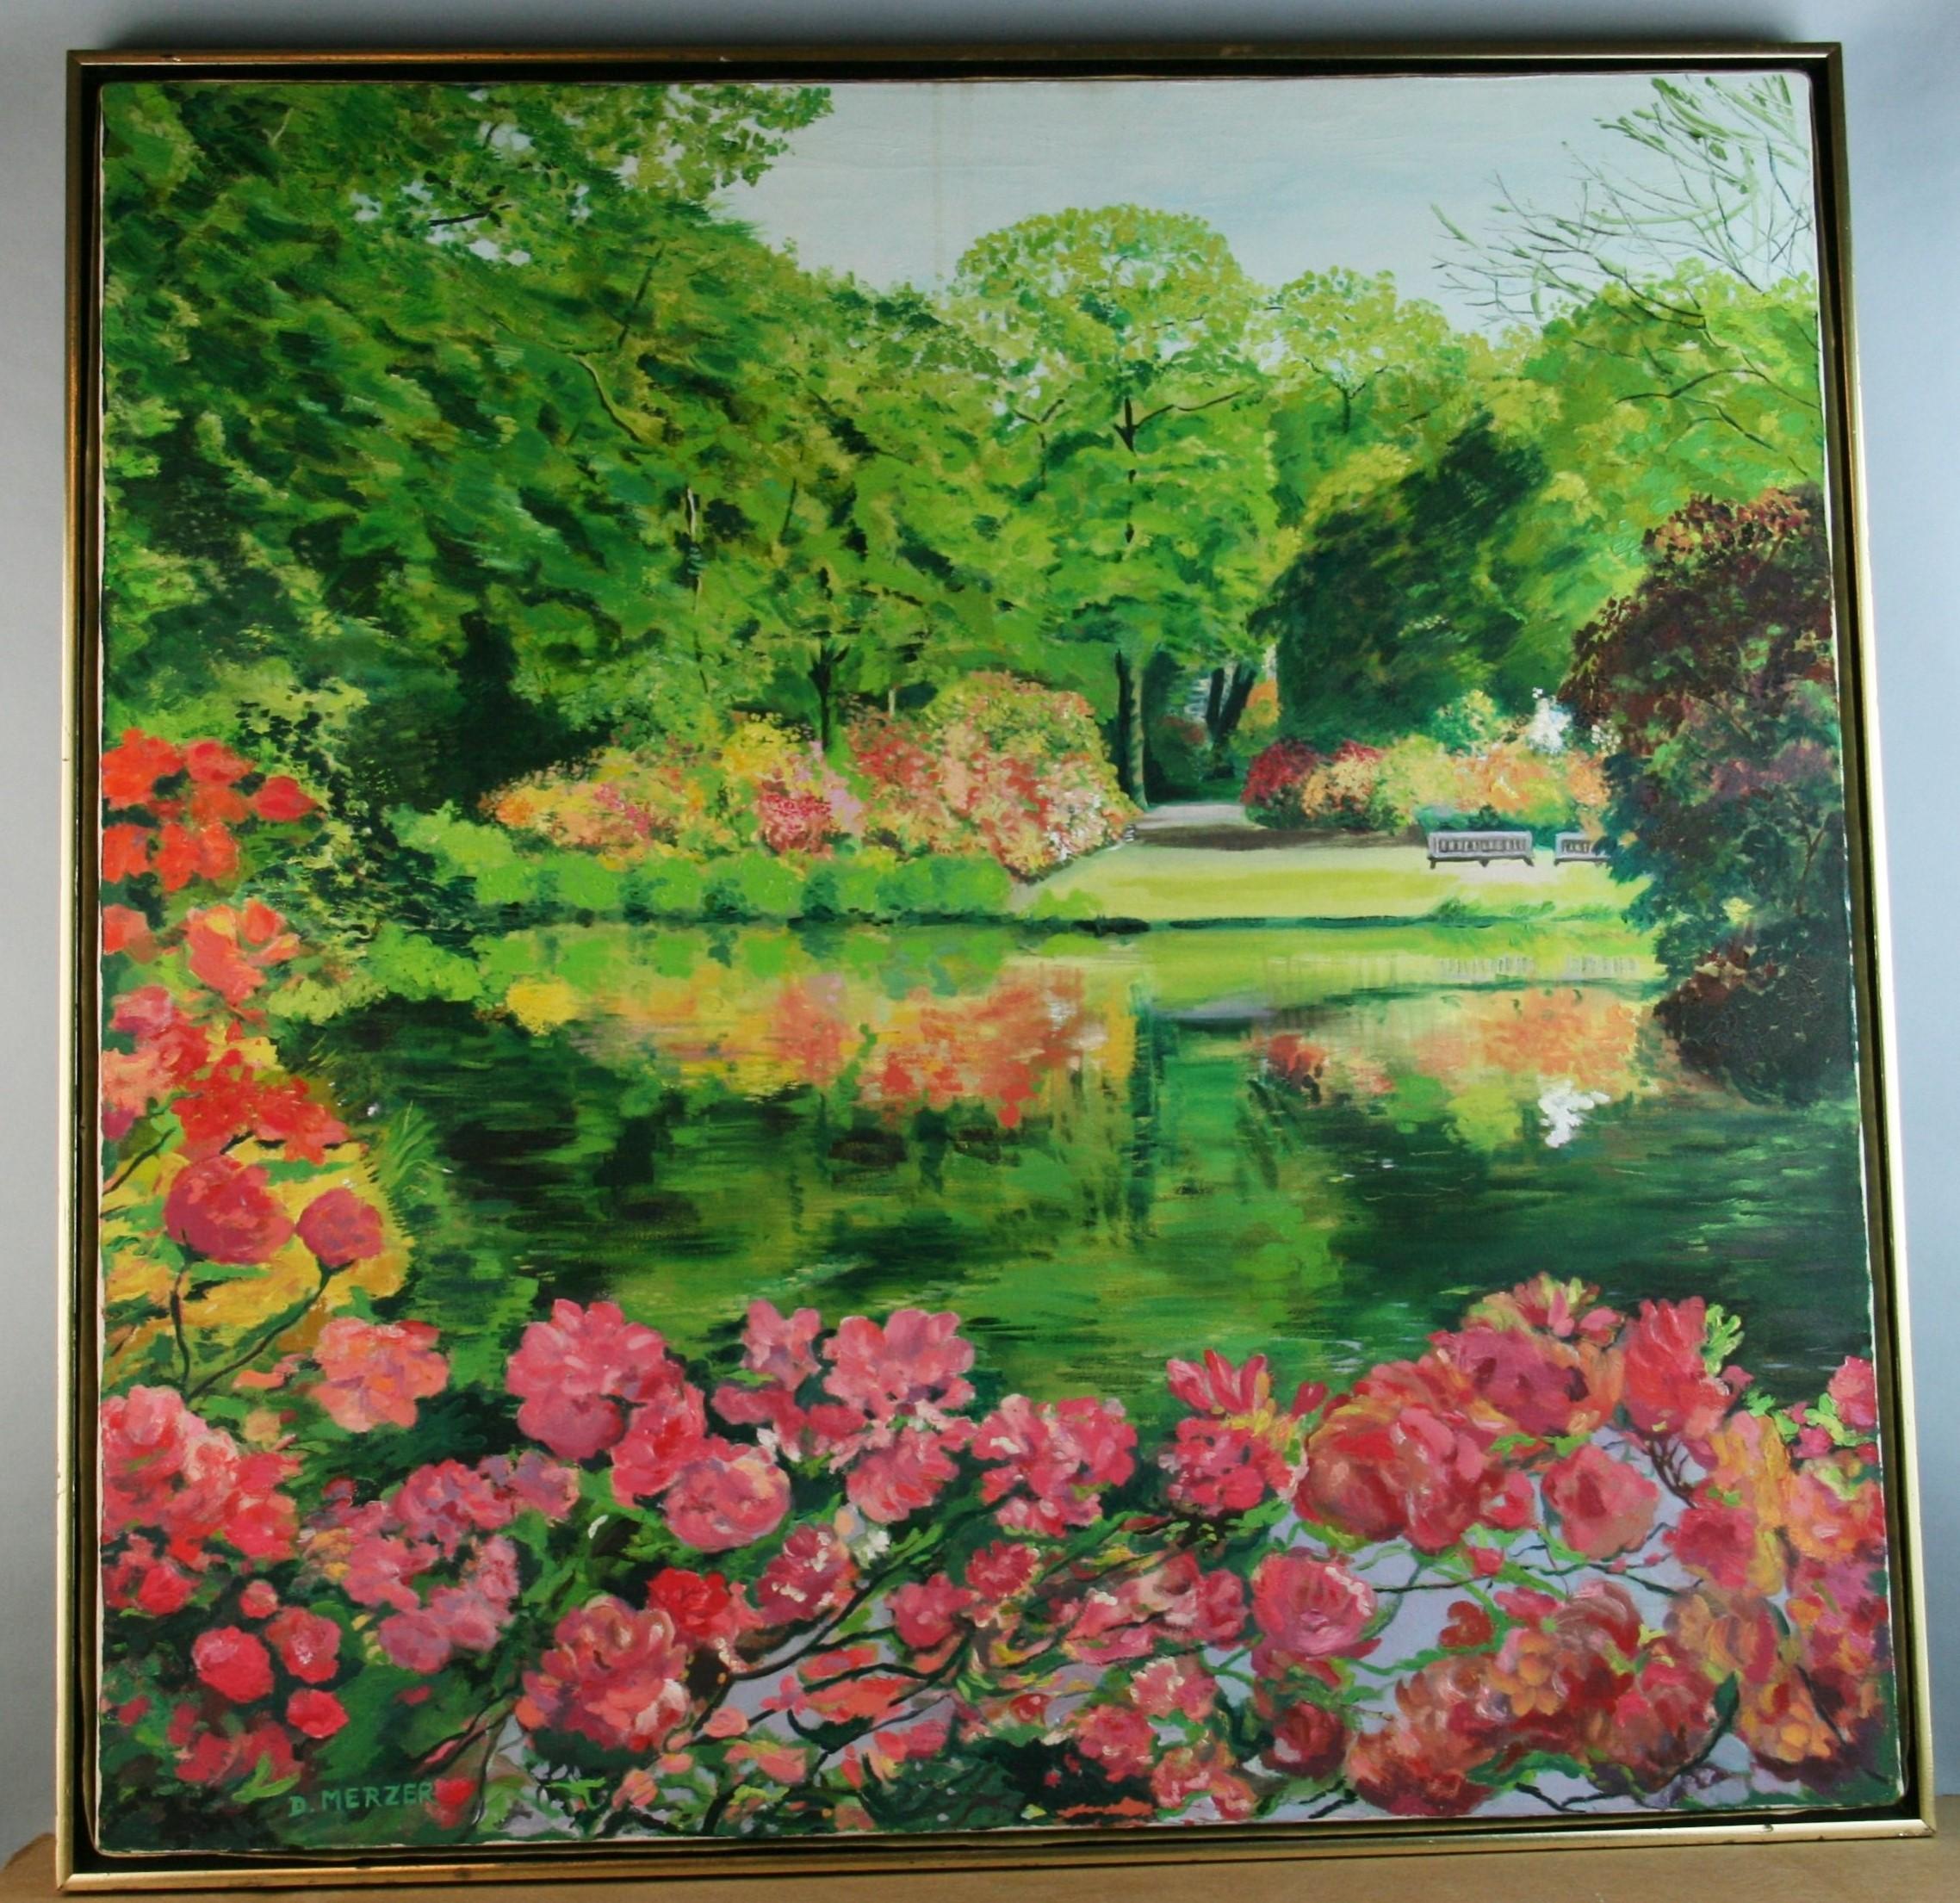 4049 Large Modern Impressionist flower garden landscape.
Signed D.Merzer dated August 1984 on verso
Set in a modern wood frame.